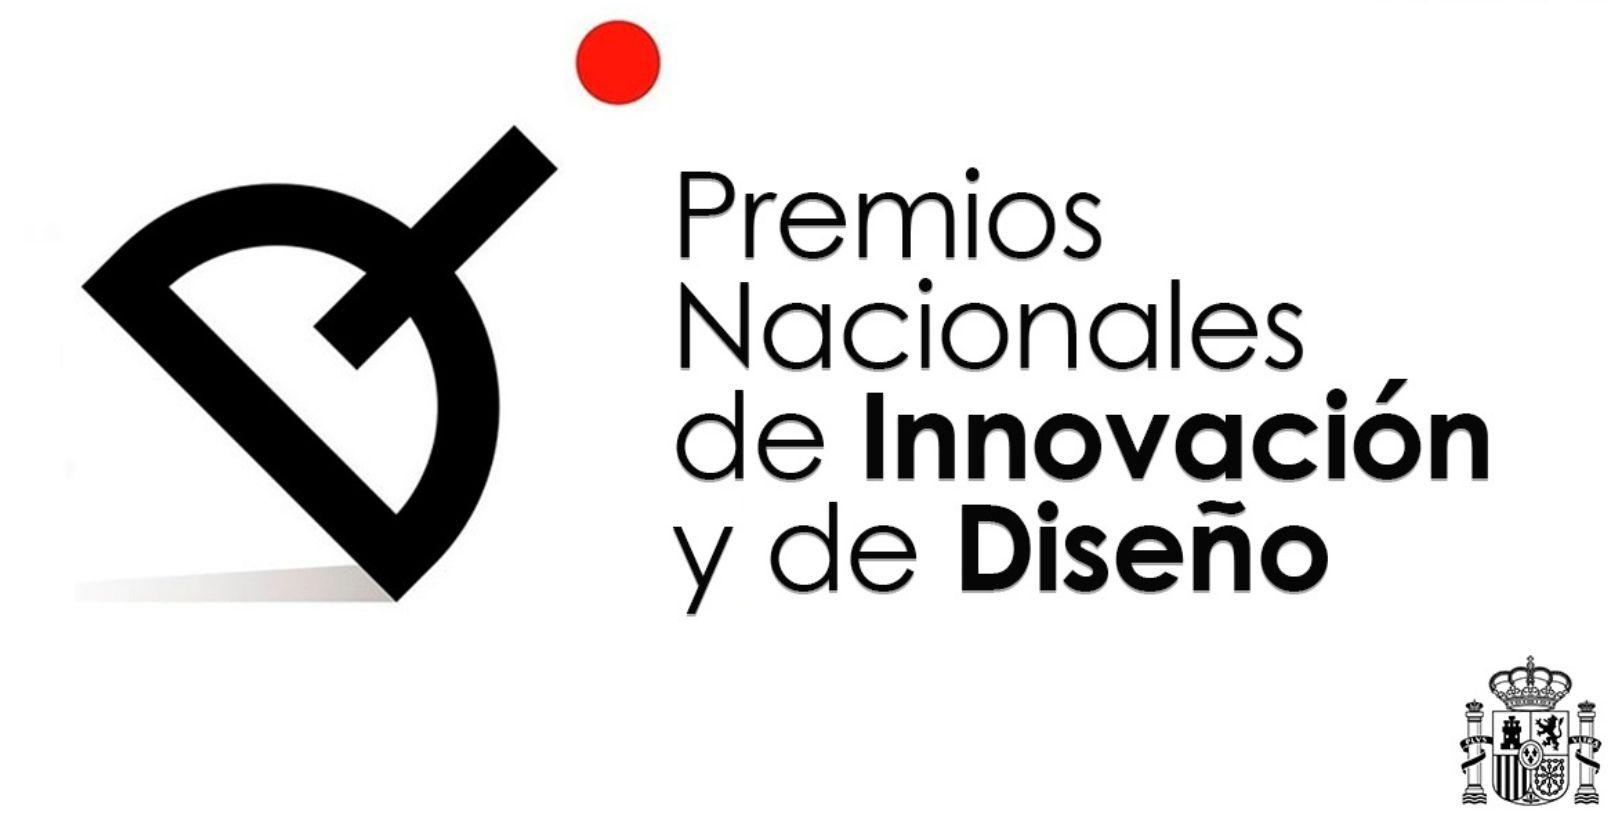 Premios nacionales de innovación y diseño